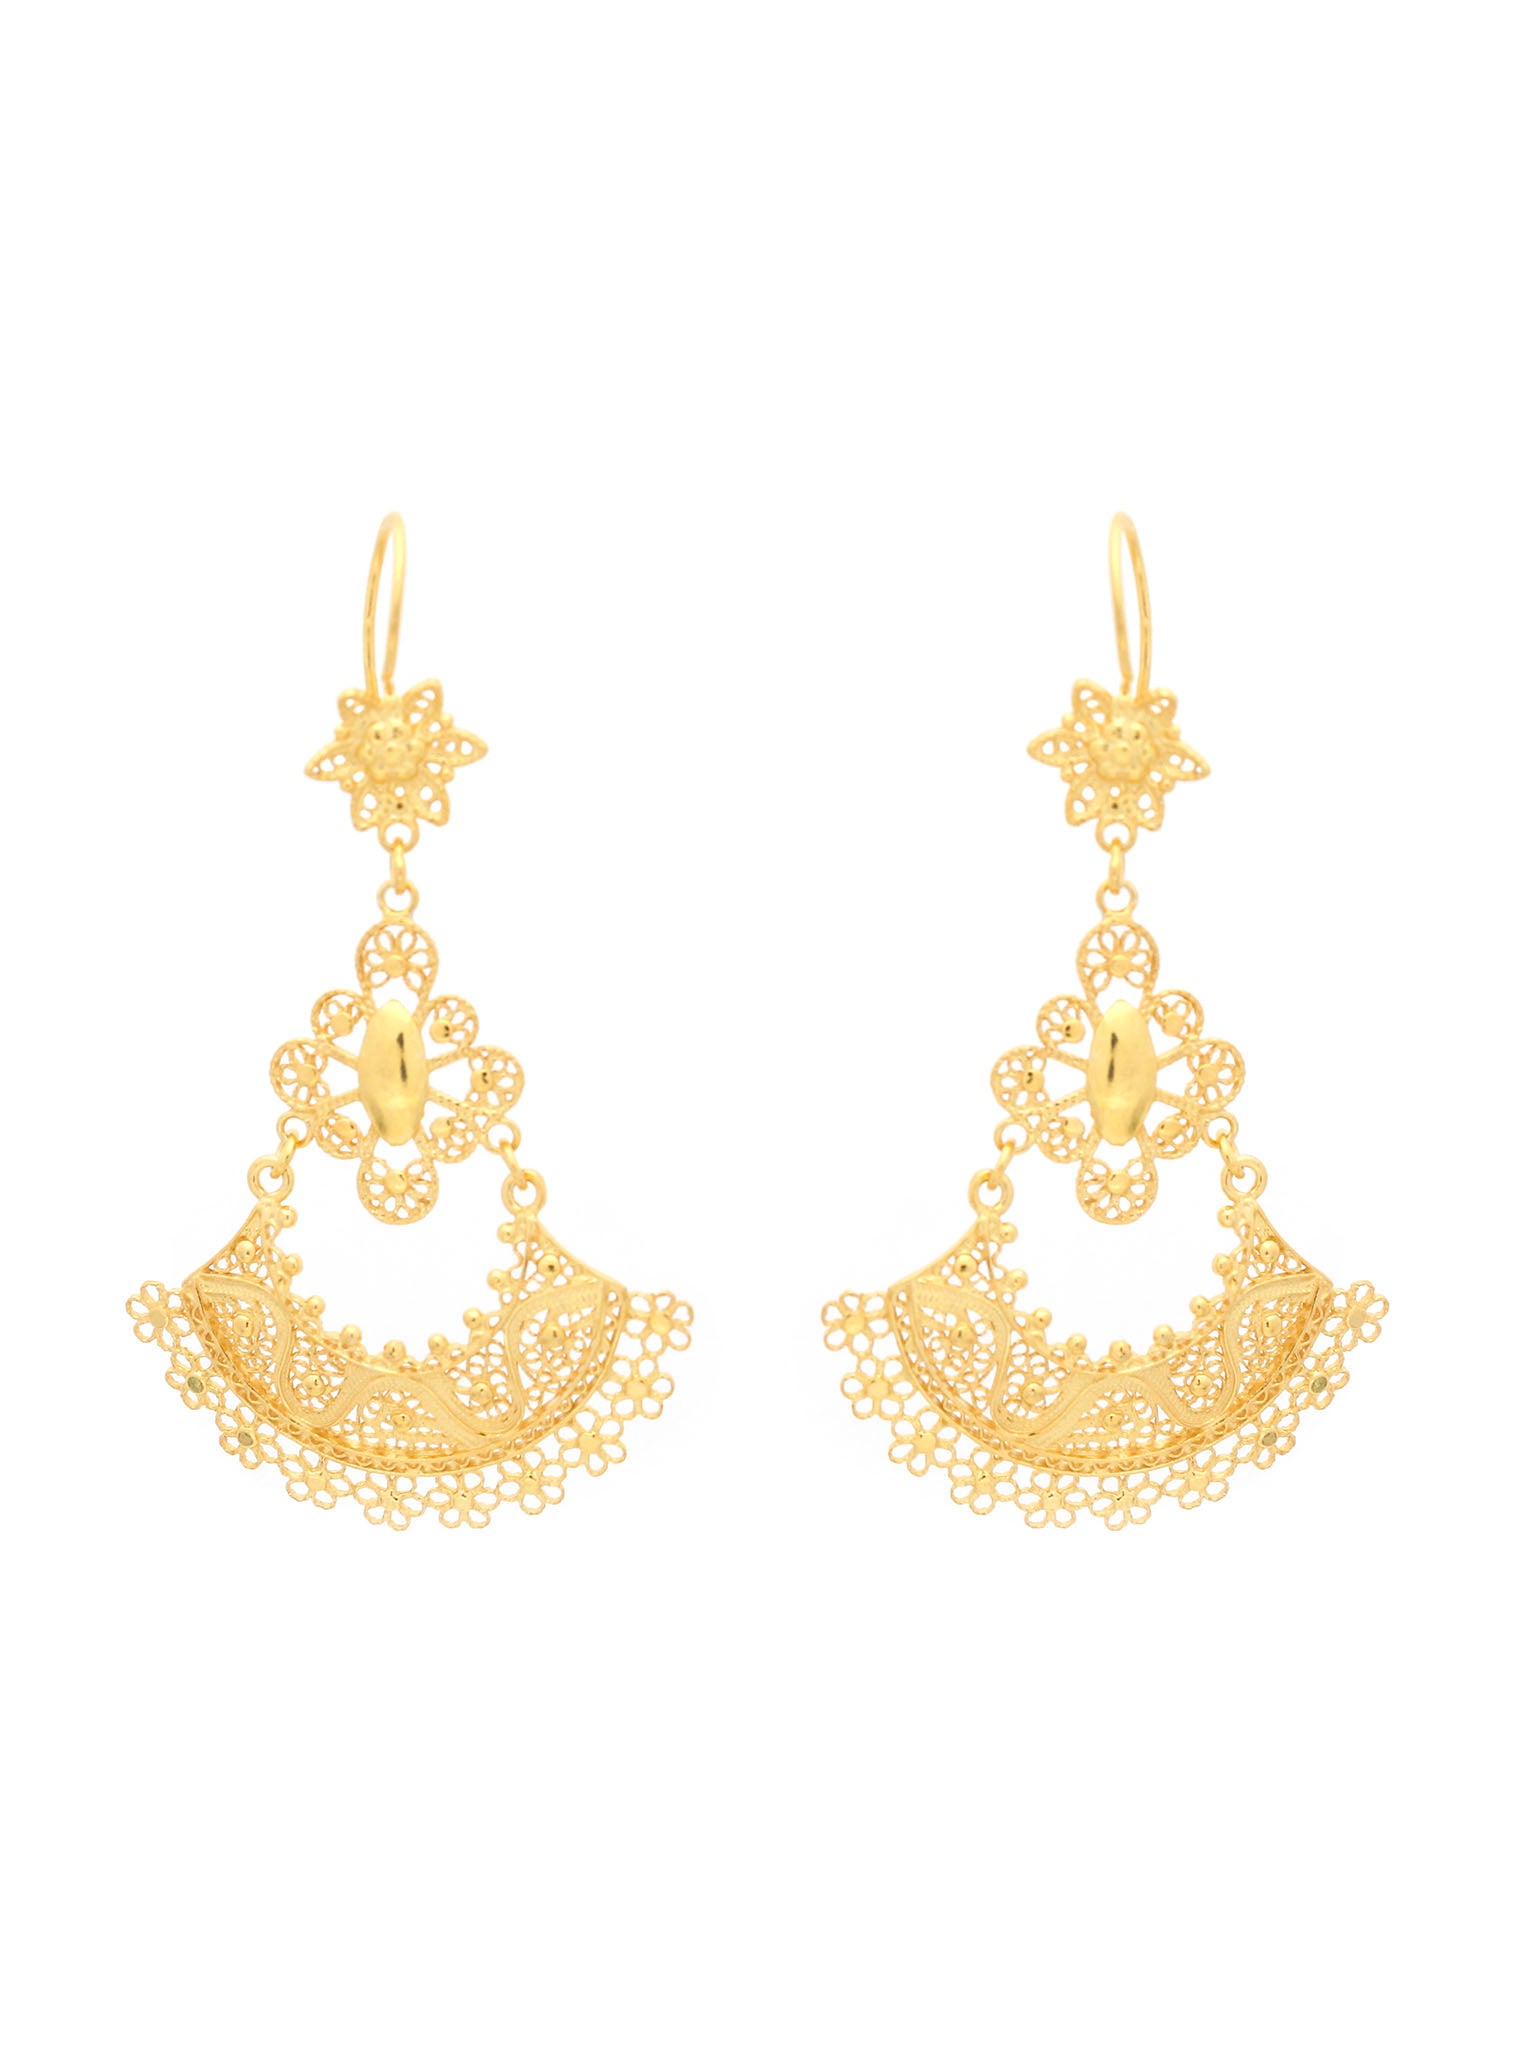 earrings Petticoat (Size M)